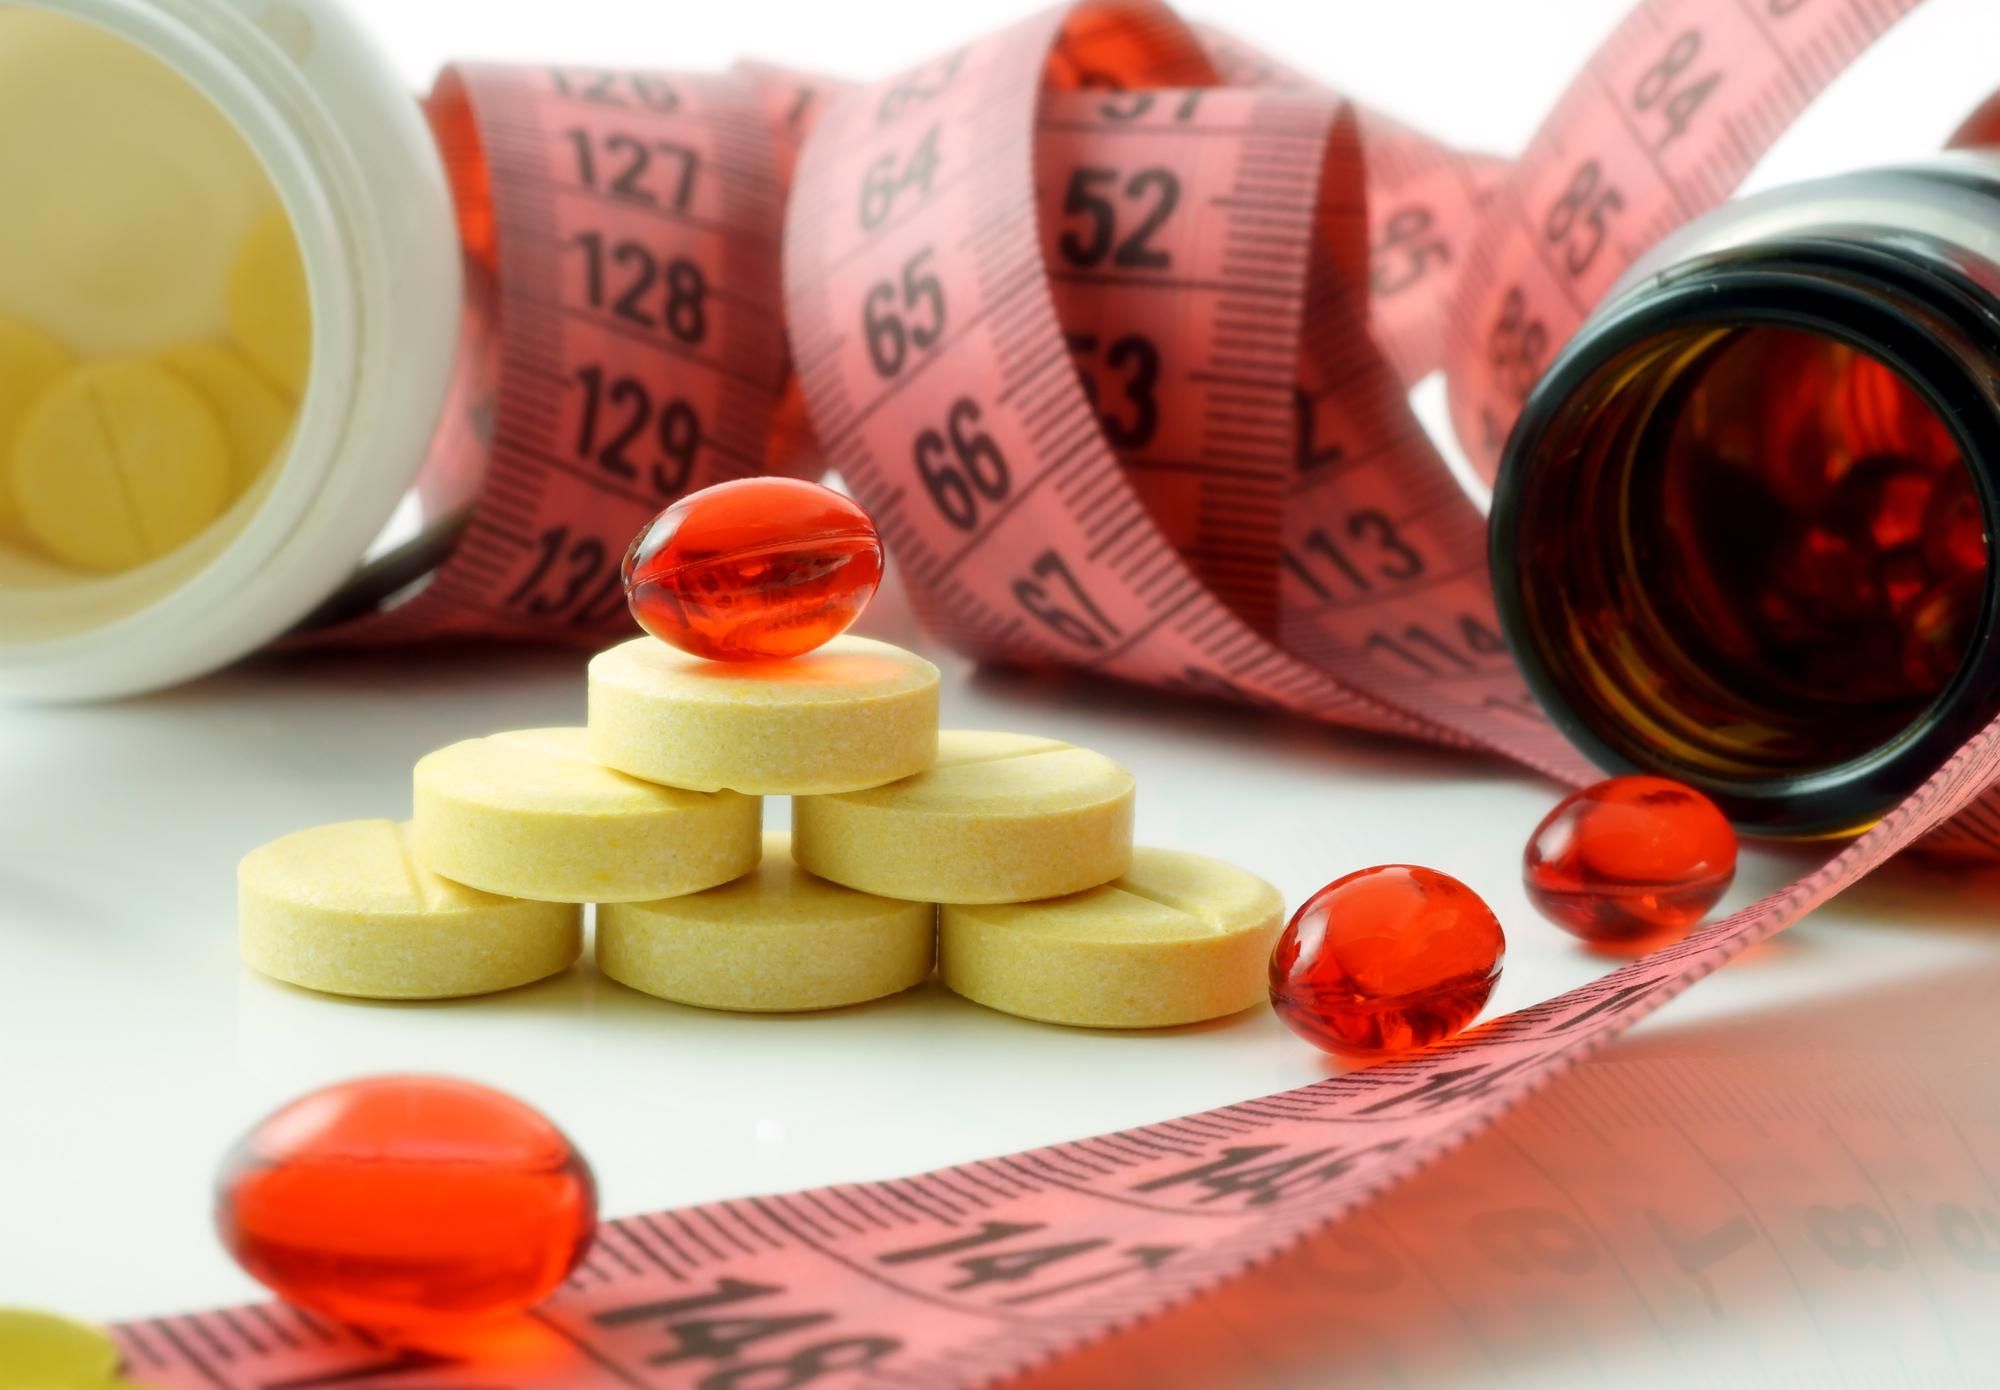 An urgent diet pill recall has been made following numerous fatalities.